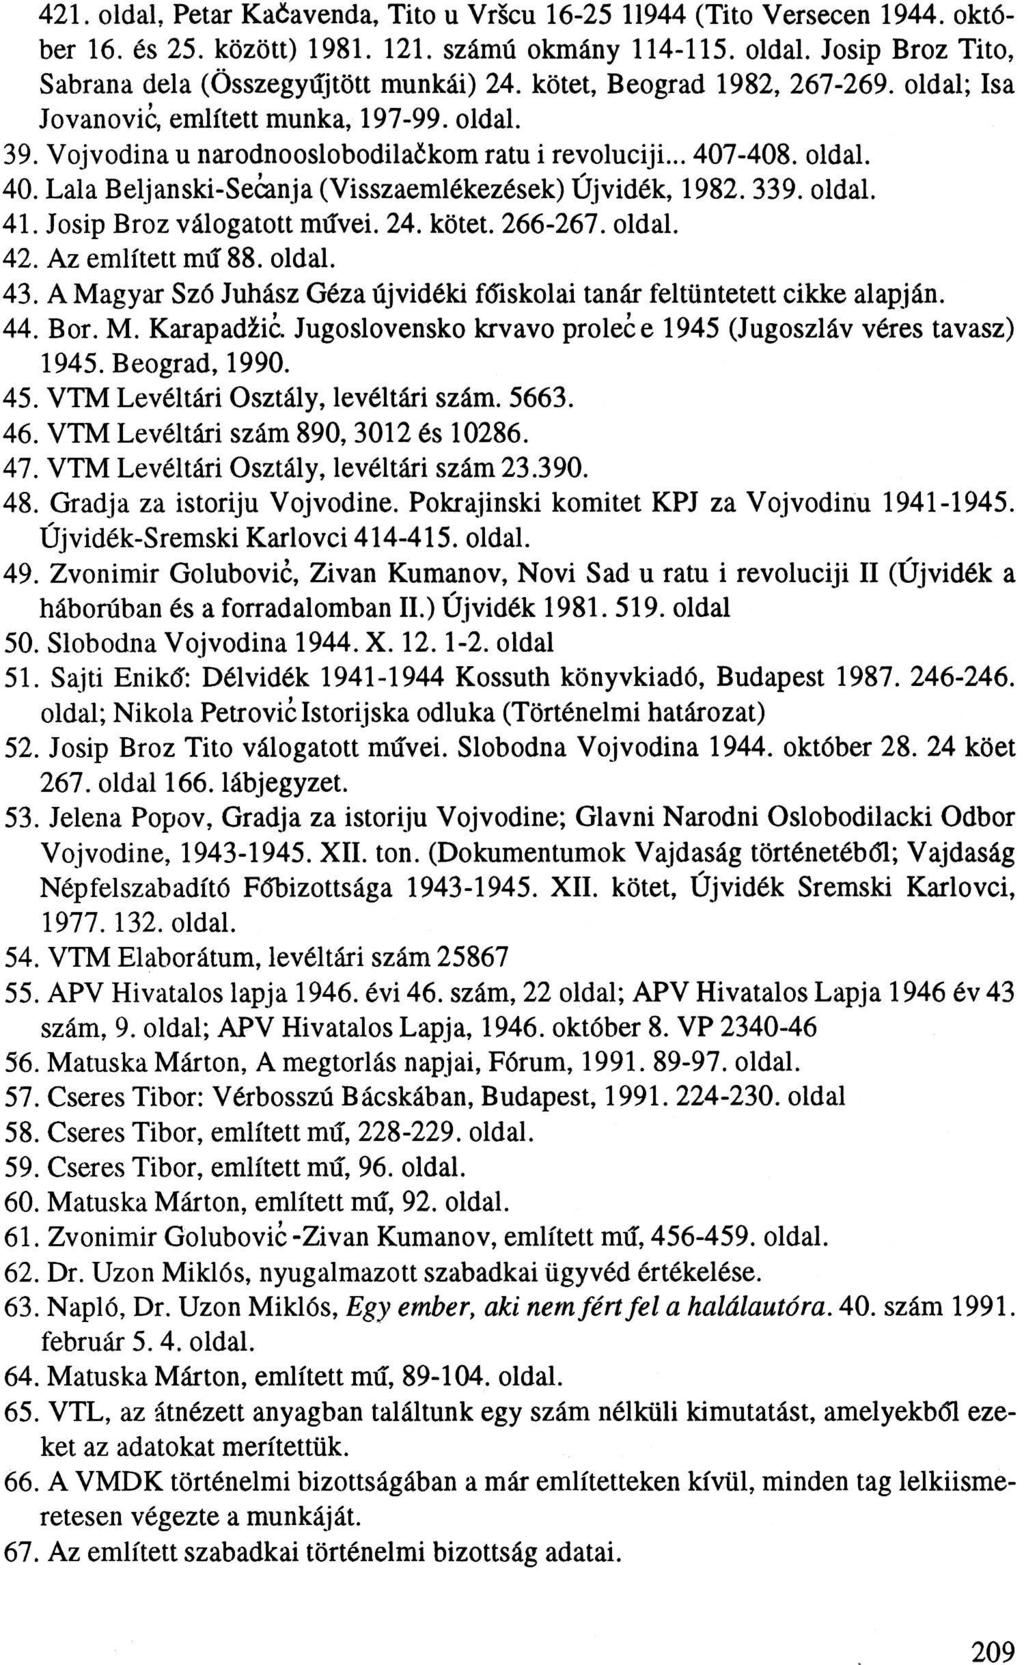 421. oldal, Petar Kačavenda, Tito u Vršcu 16-25 11944 (Tito Versecen 1944. október 16. és 25. között) 1981. 121. számú okmány 114-115. oldal. Josip Broz Tito, Sabrana dela (Összegyűjtött munkái) 24.